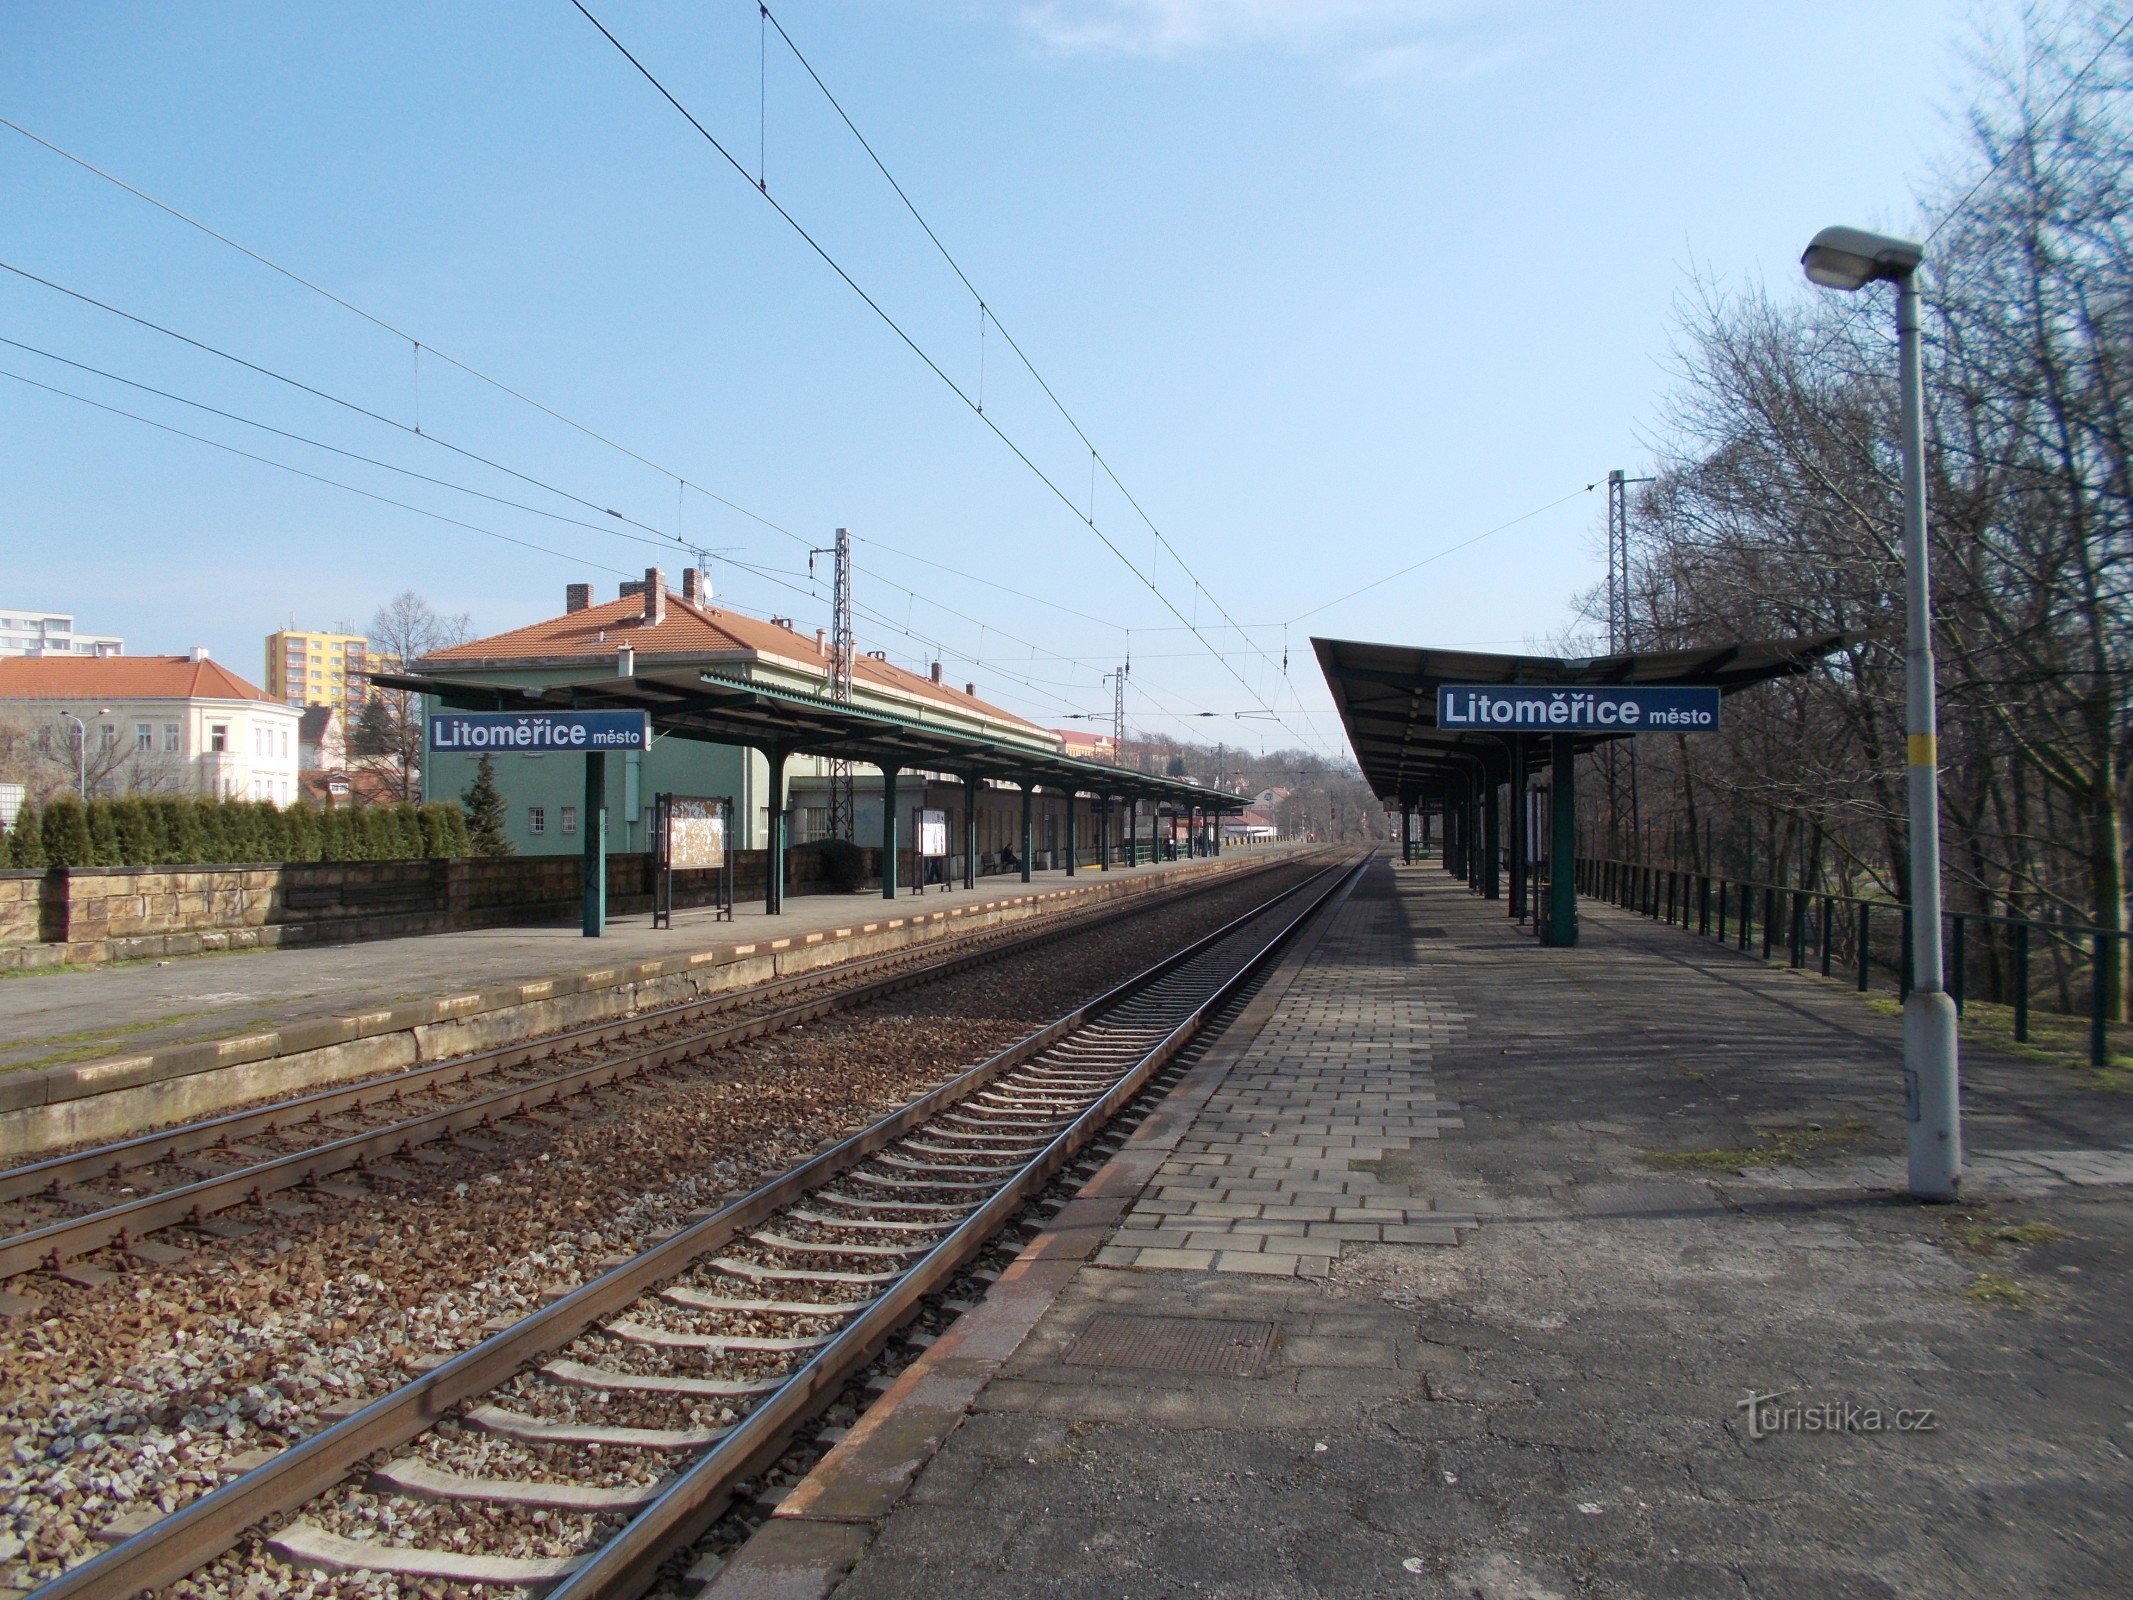 Litoměřice cidade - estação ferroviária